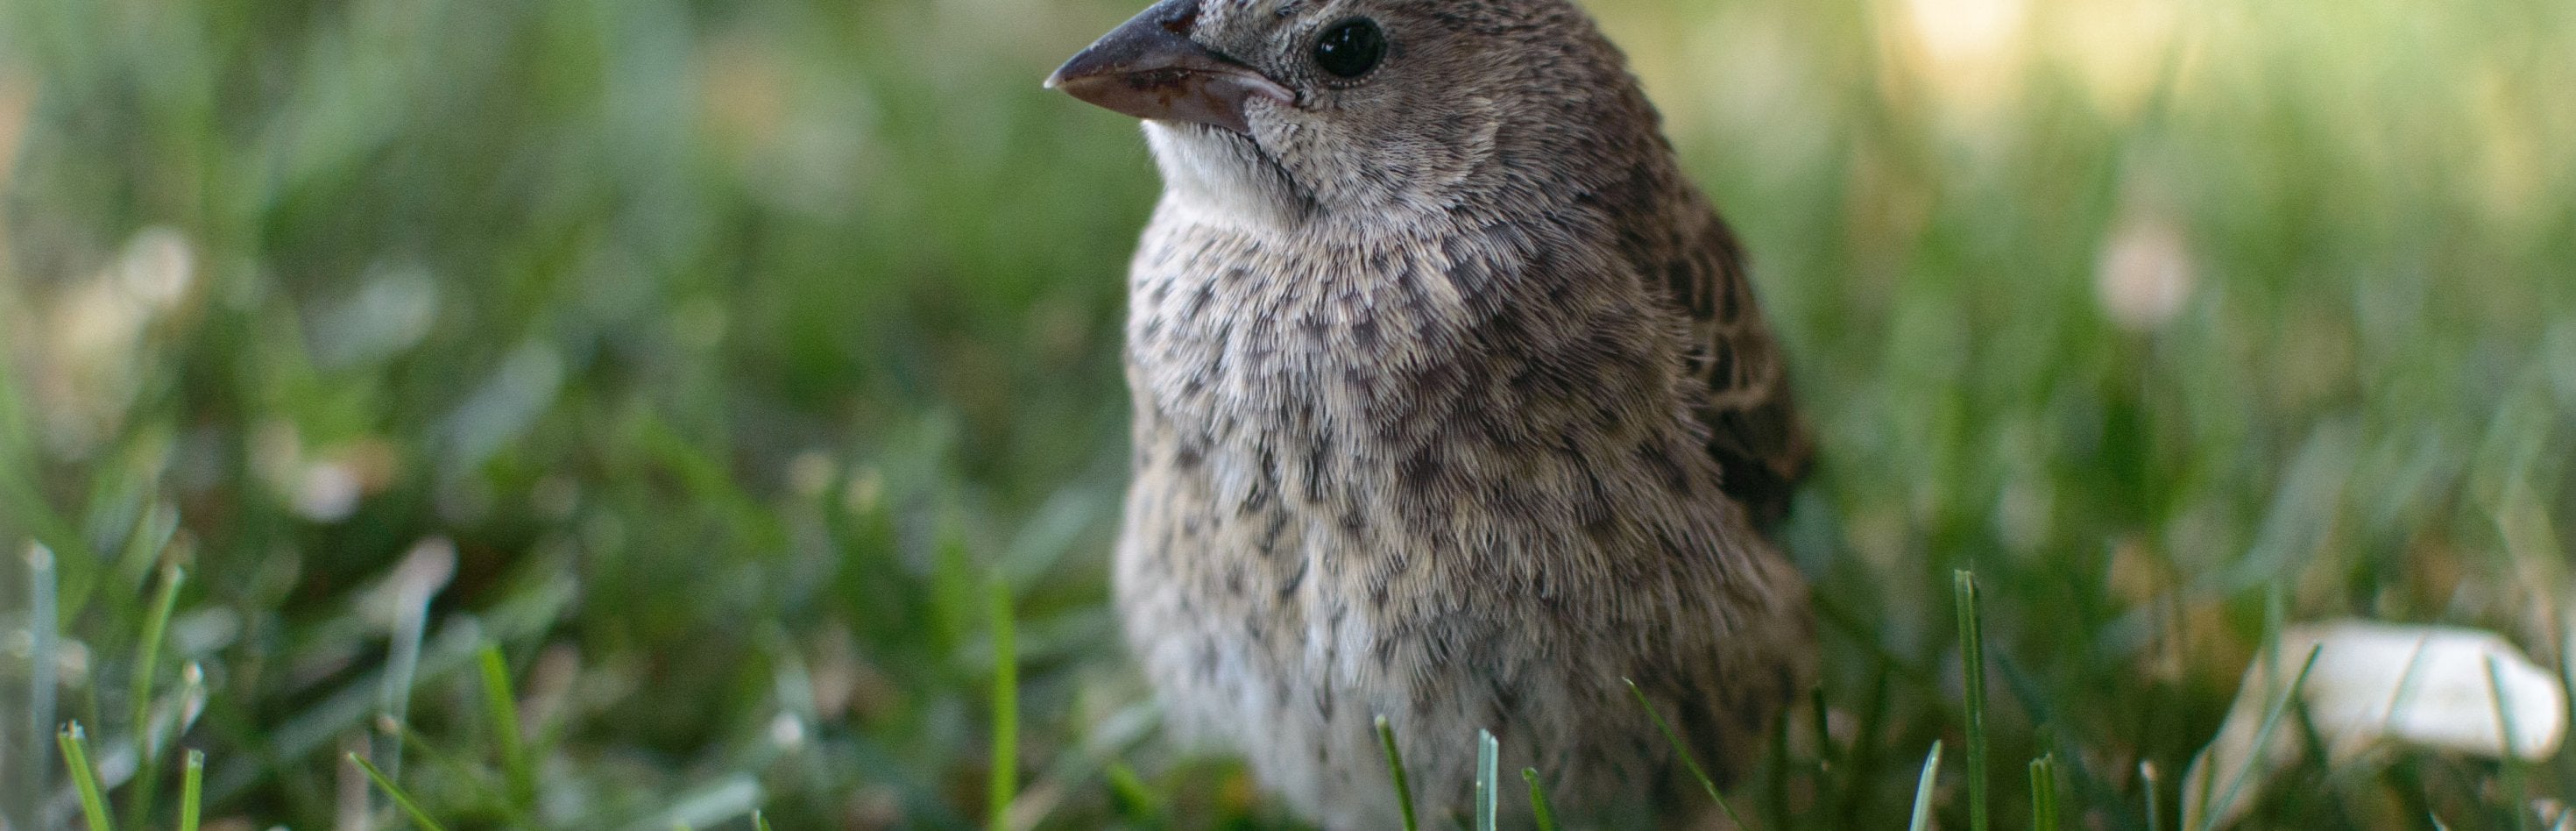 BBC Wildlife Magazine Features Bird Friendly Coffee - Bird & Wild Coffee